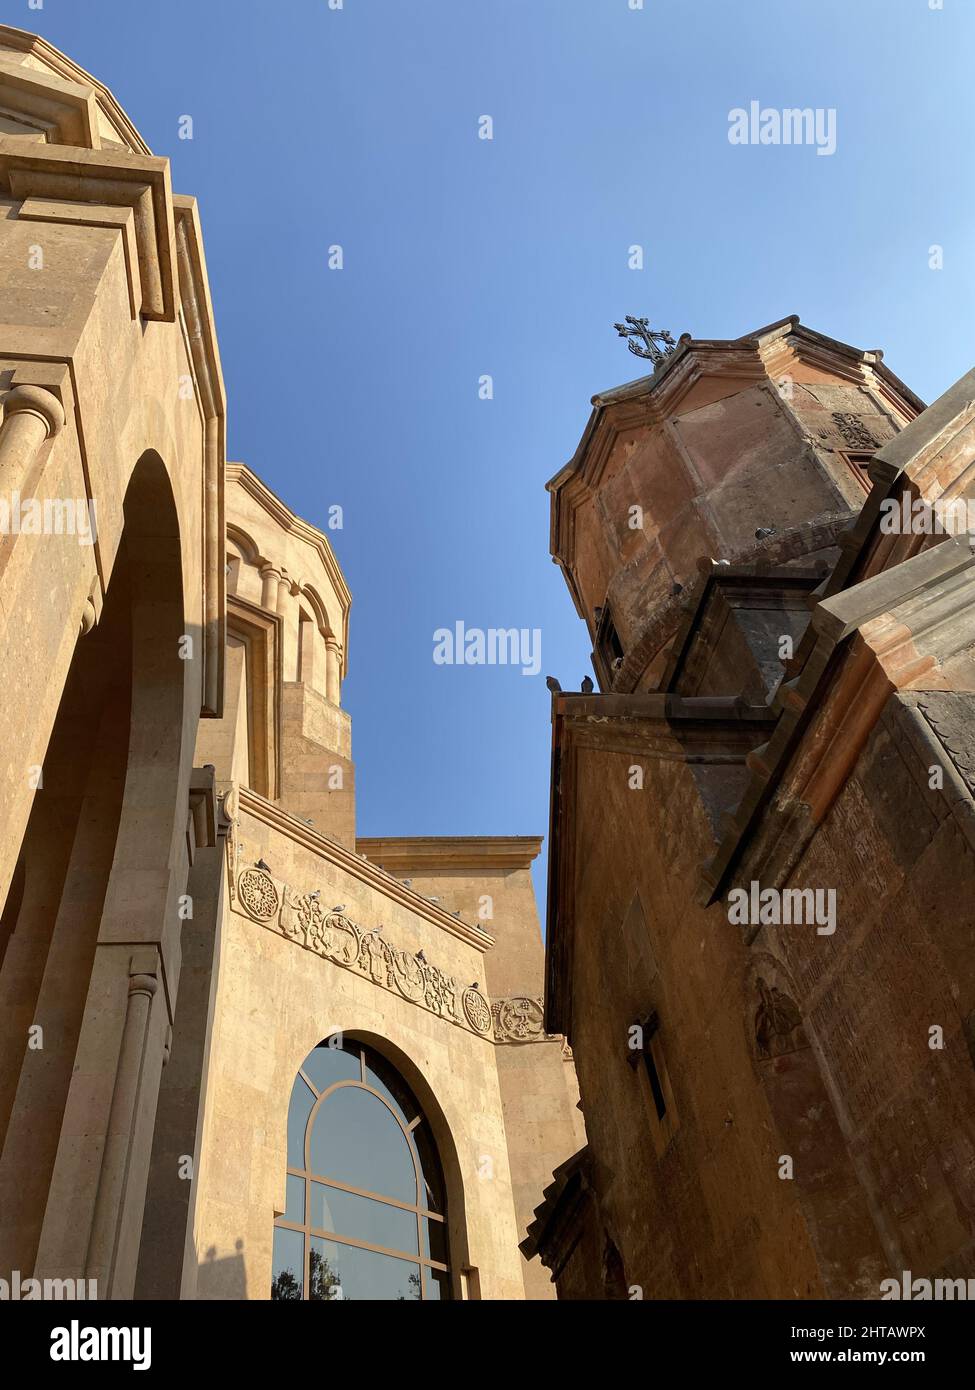 Photo à angle bas de l'église Saint Anna à côté de l'église Katoghike, Erevan, Arménie Banque D'Images